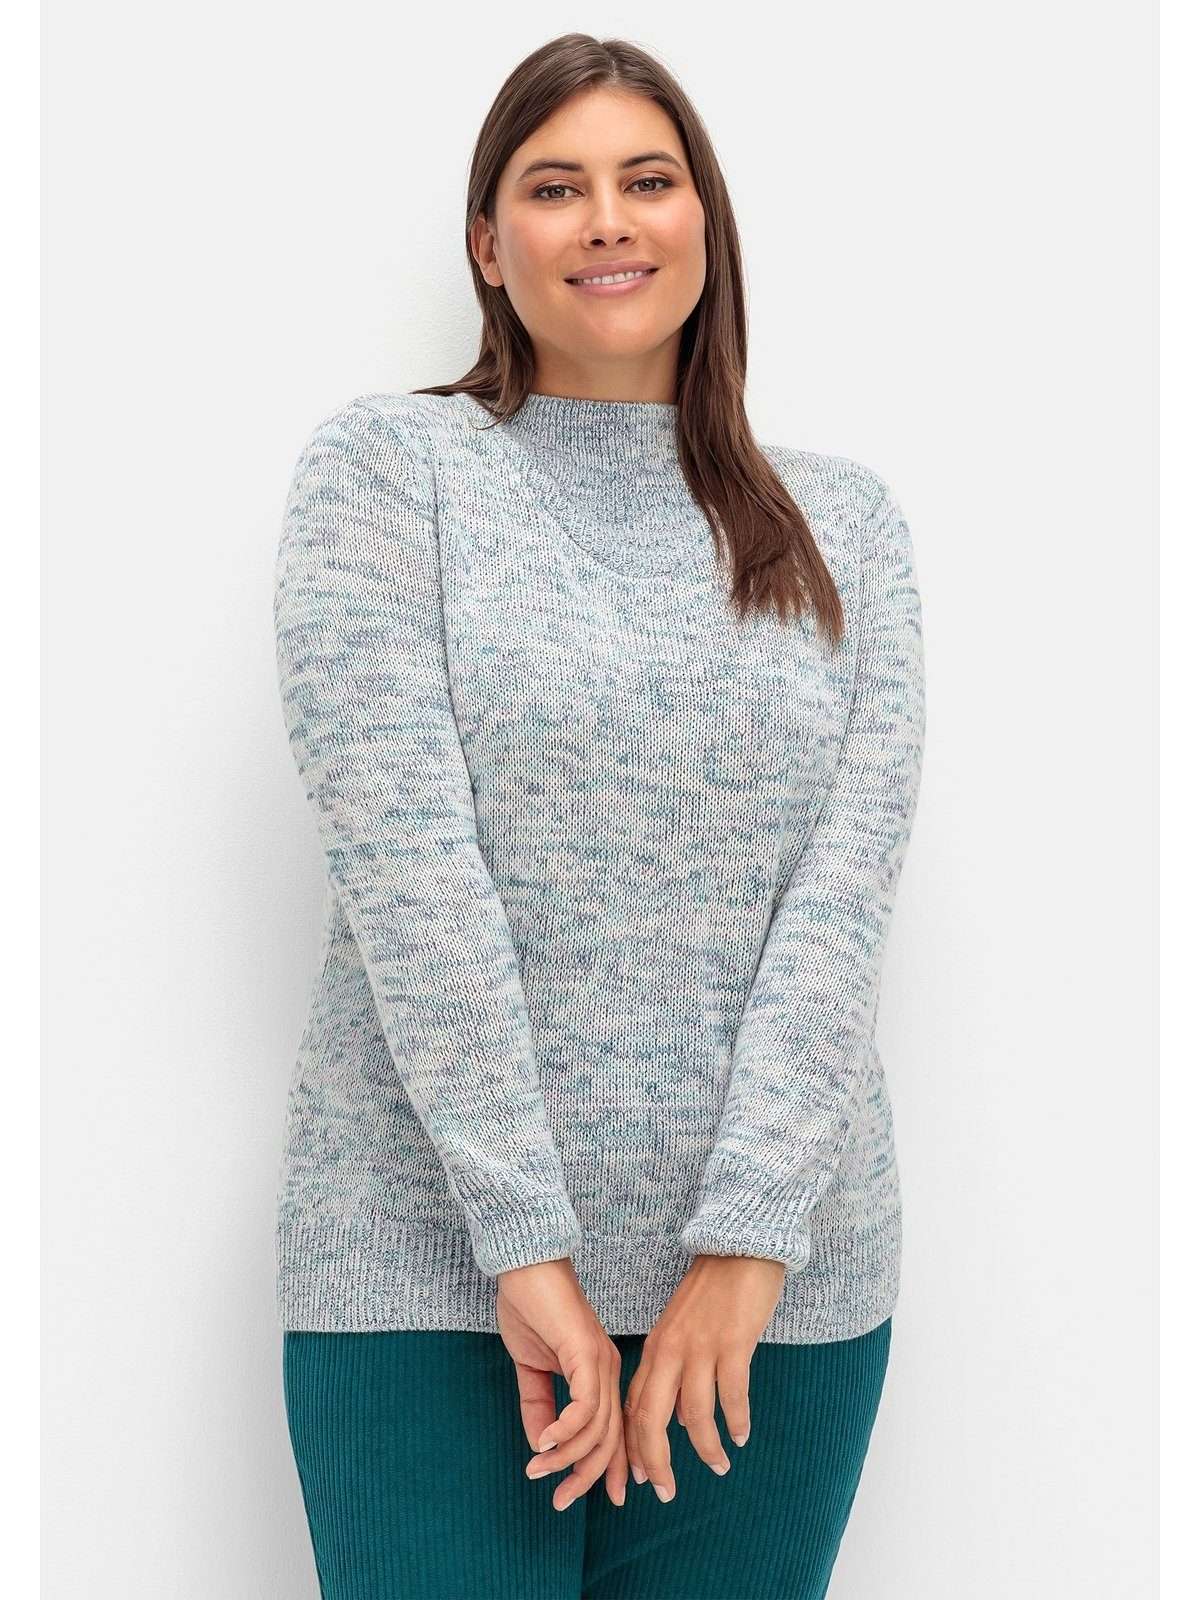 Вязаный свитер больших размеров с V-вставкой.